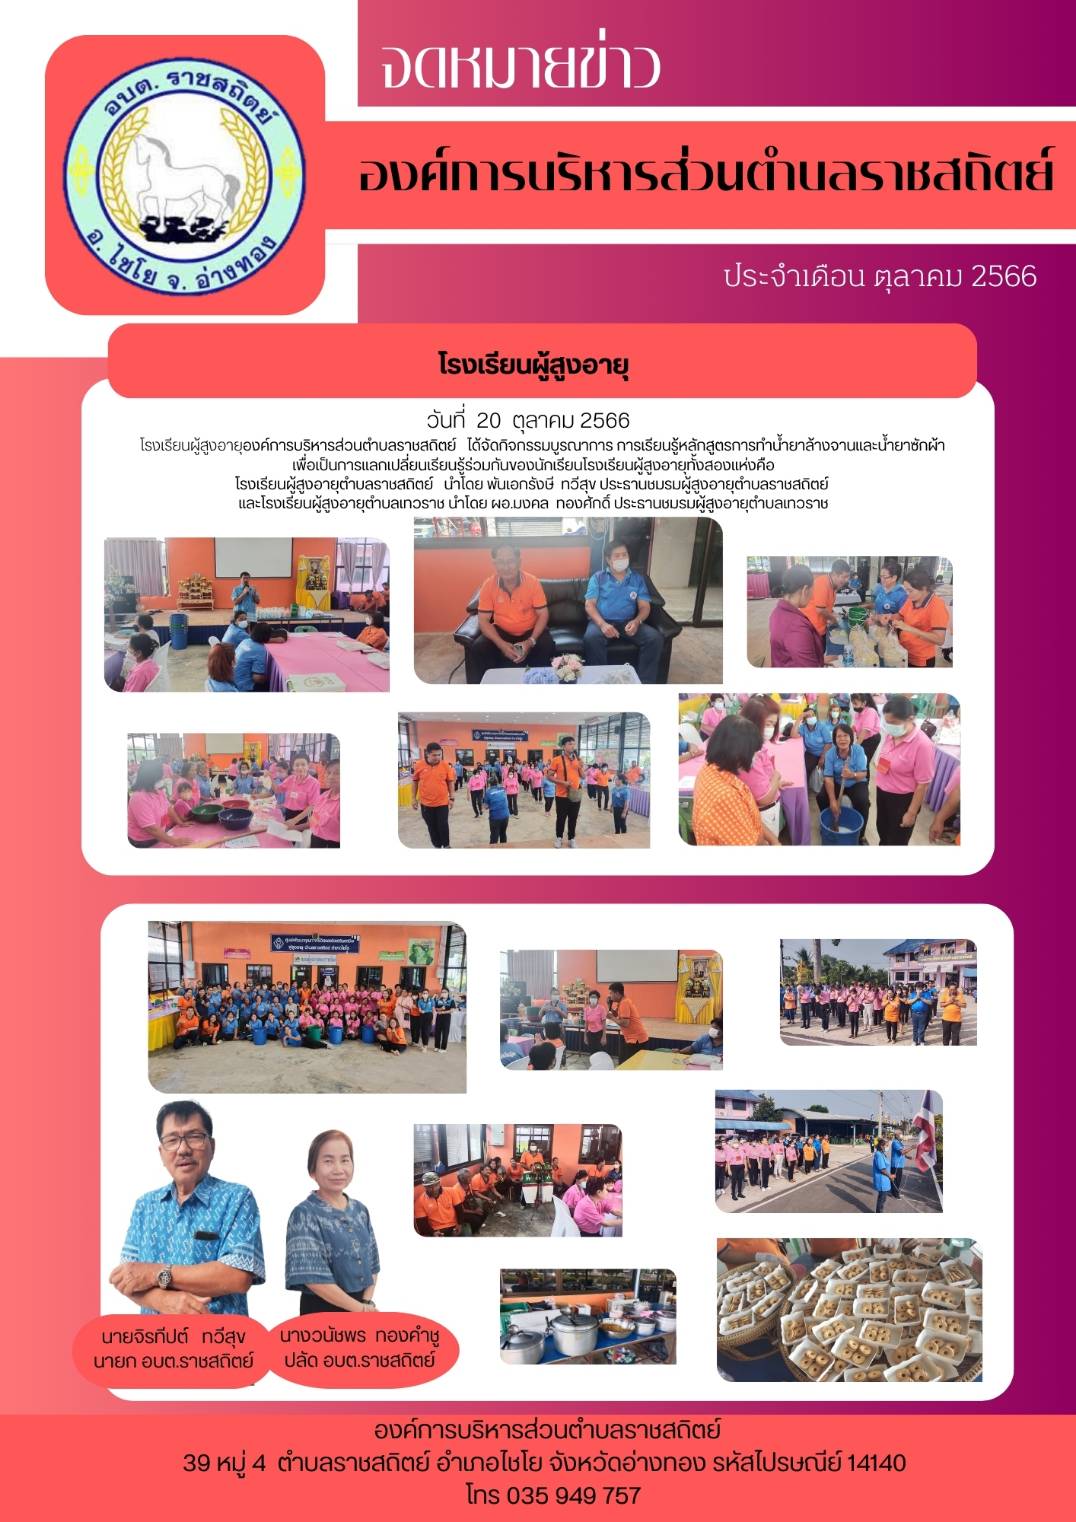 วันที่ 20 ตุลาคม 2566 โรงเรียนผู้สูงอายุองค์การบริหารส่วนตำบลราชสถิตย์ ได้จัดกิจกรรมบูรณาการ การเรียนรู้หลูกสูตรการทำน้ำยาล้างจานและน้ำยาซักผ้า เพื่อเป็นการแลกเปลี่ยนเรียนรู้ร่วมกันของนักเรียนโรงเรียนผู้สูงอายุทั้งสองแห่งคือ โรงเรียนผู้สูงอายุตำบลราชสถิตย์ นำโดย พันเอกรังษี ทวีสุข ประรานชมรมผู้สูงอายุตำบลราชสถิตย์ และโรงเรียนผู้สูงอายุตำบลเทวราช นำโดย ผอ.มงคล ทองศักดิ์ ประรานชมรมผู้สูงอายุตำบลเทวราช